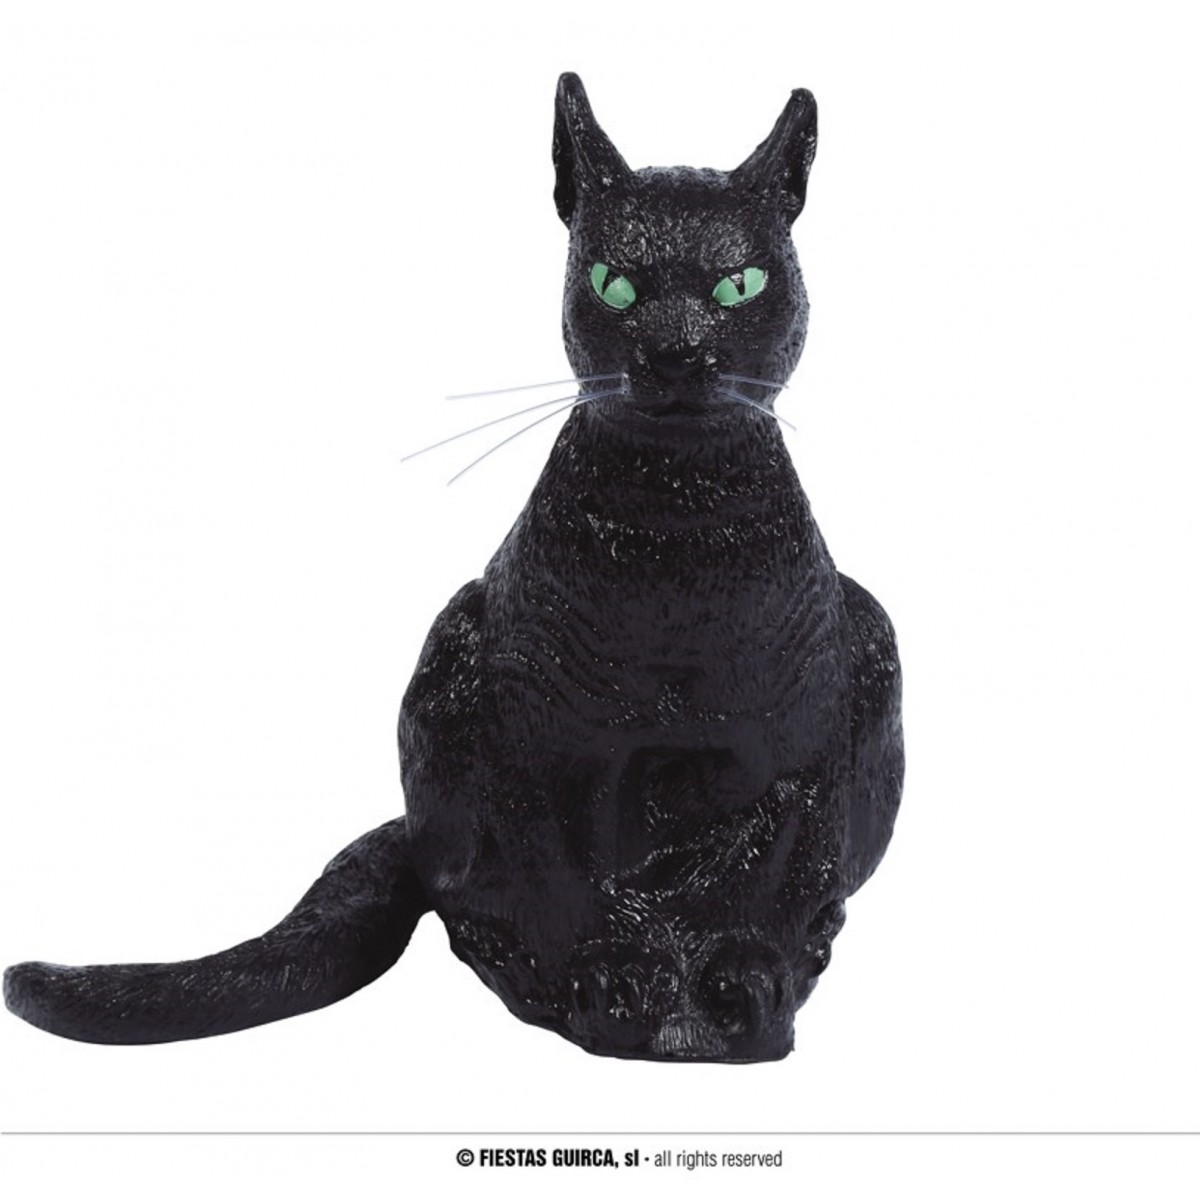 Statua gatto nero seduto 35 centimetri